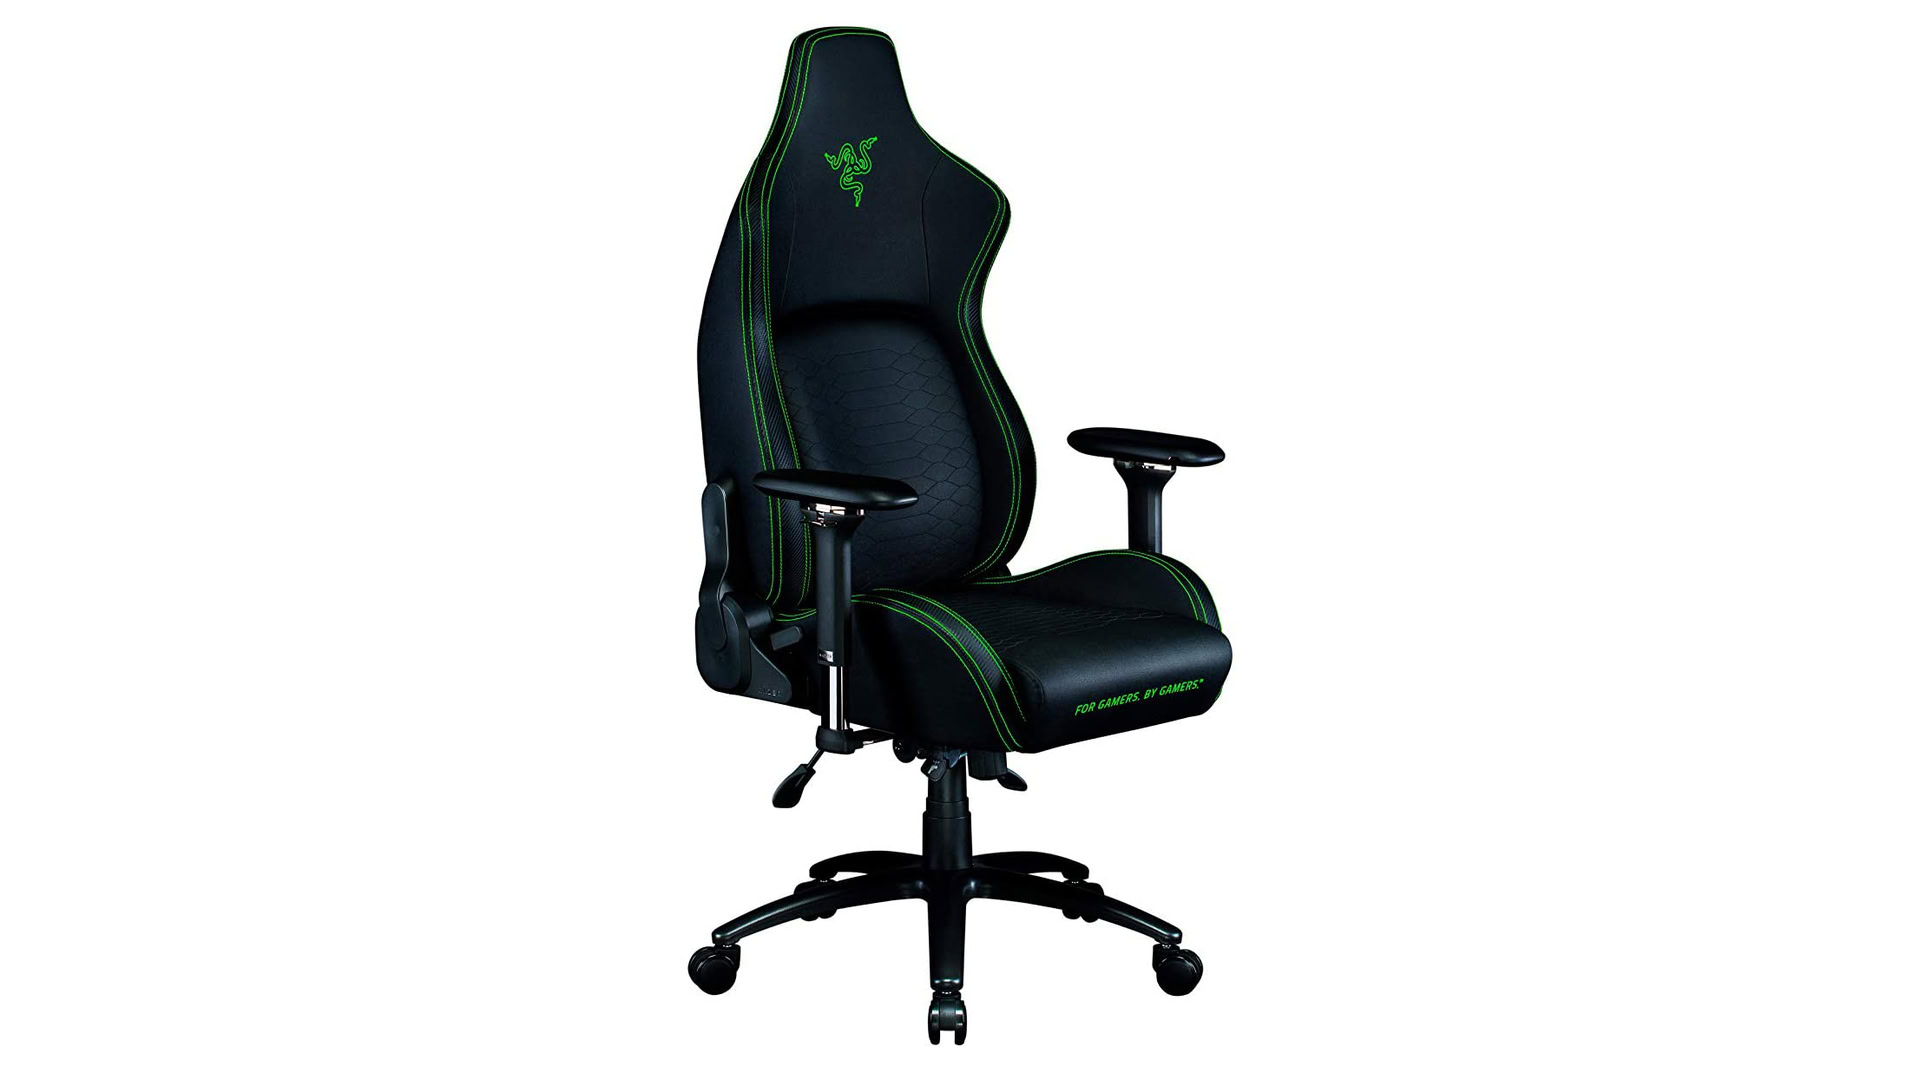 Razer Iskur gaming chair